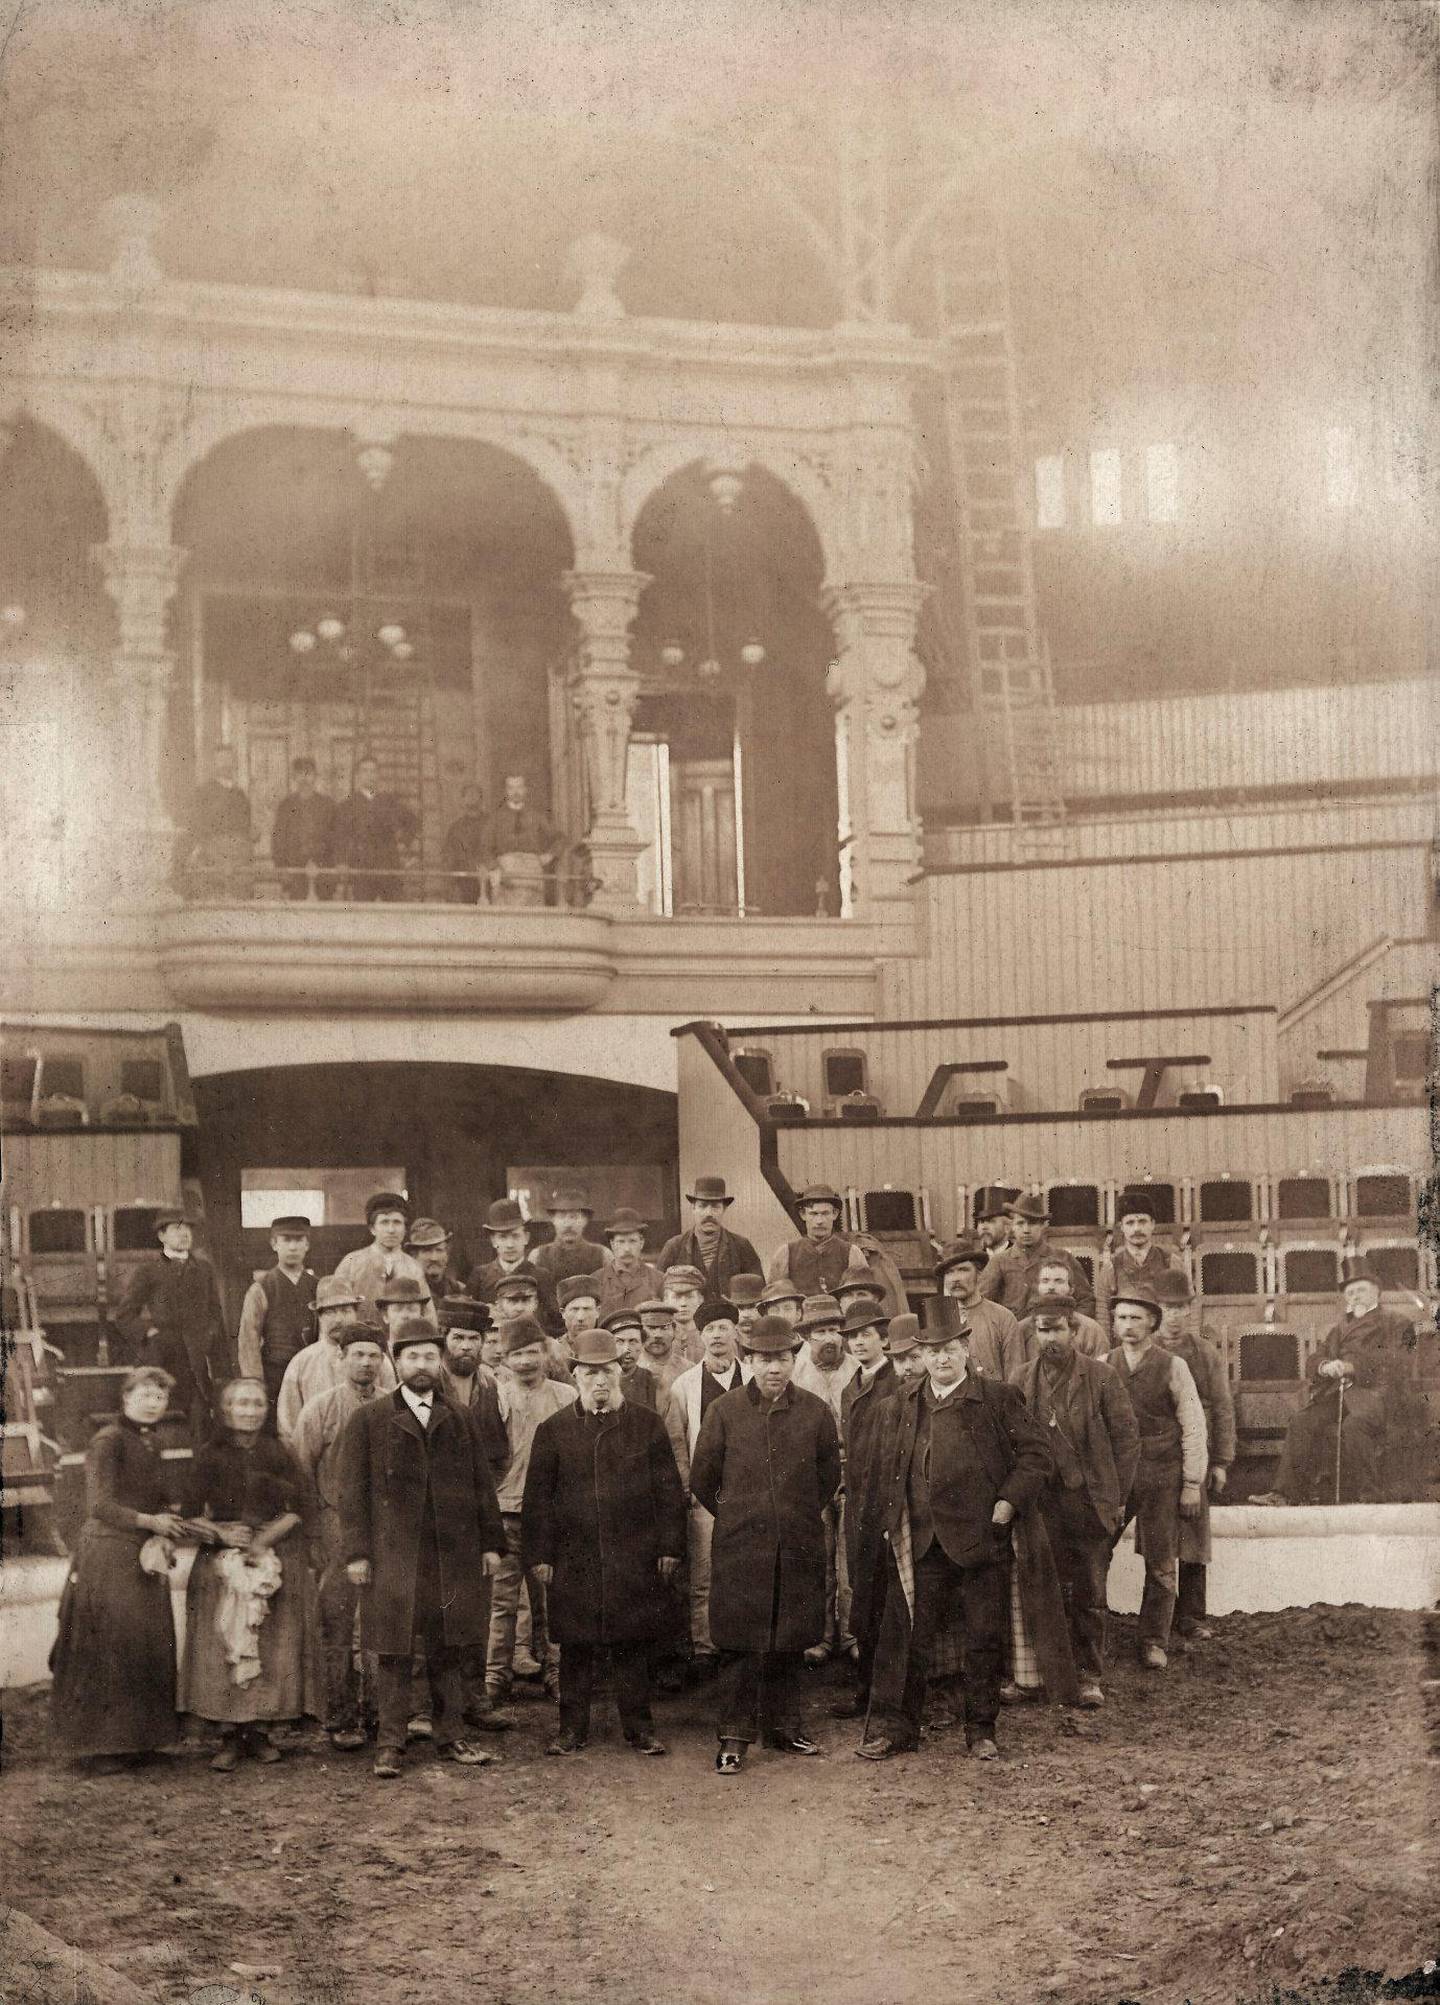 Det var 32 meter høyt under taket i Cirkus-kuppelen. Folk og interiør fotografert cirka 1900. FOTO: UKJENT PERSON/OSLO MUSEUM